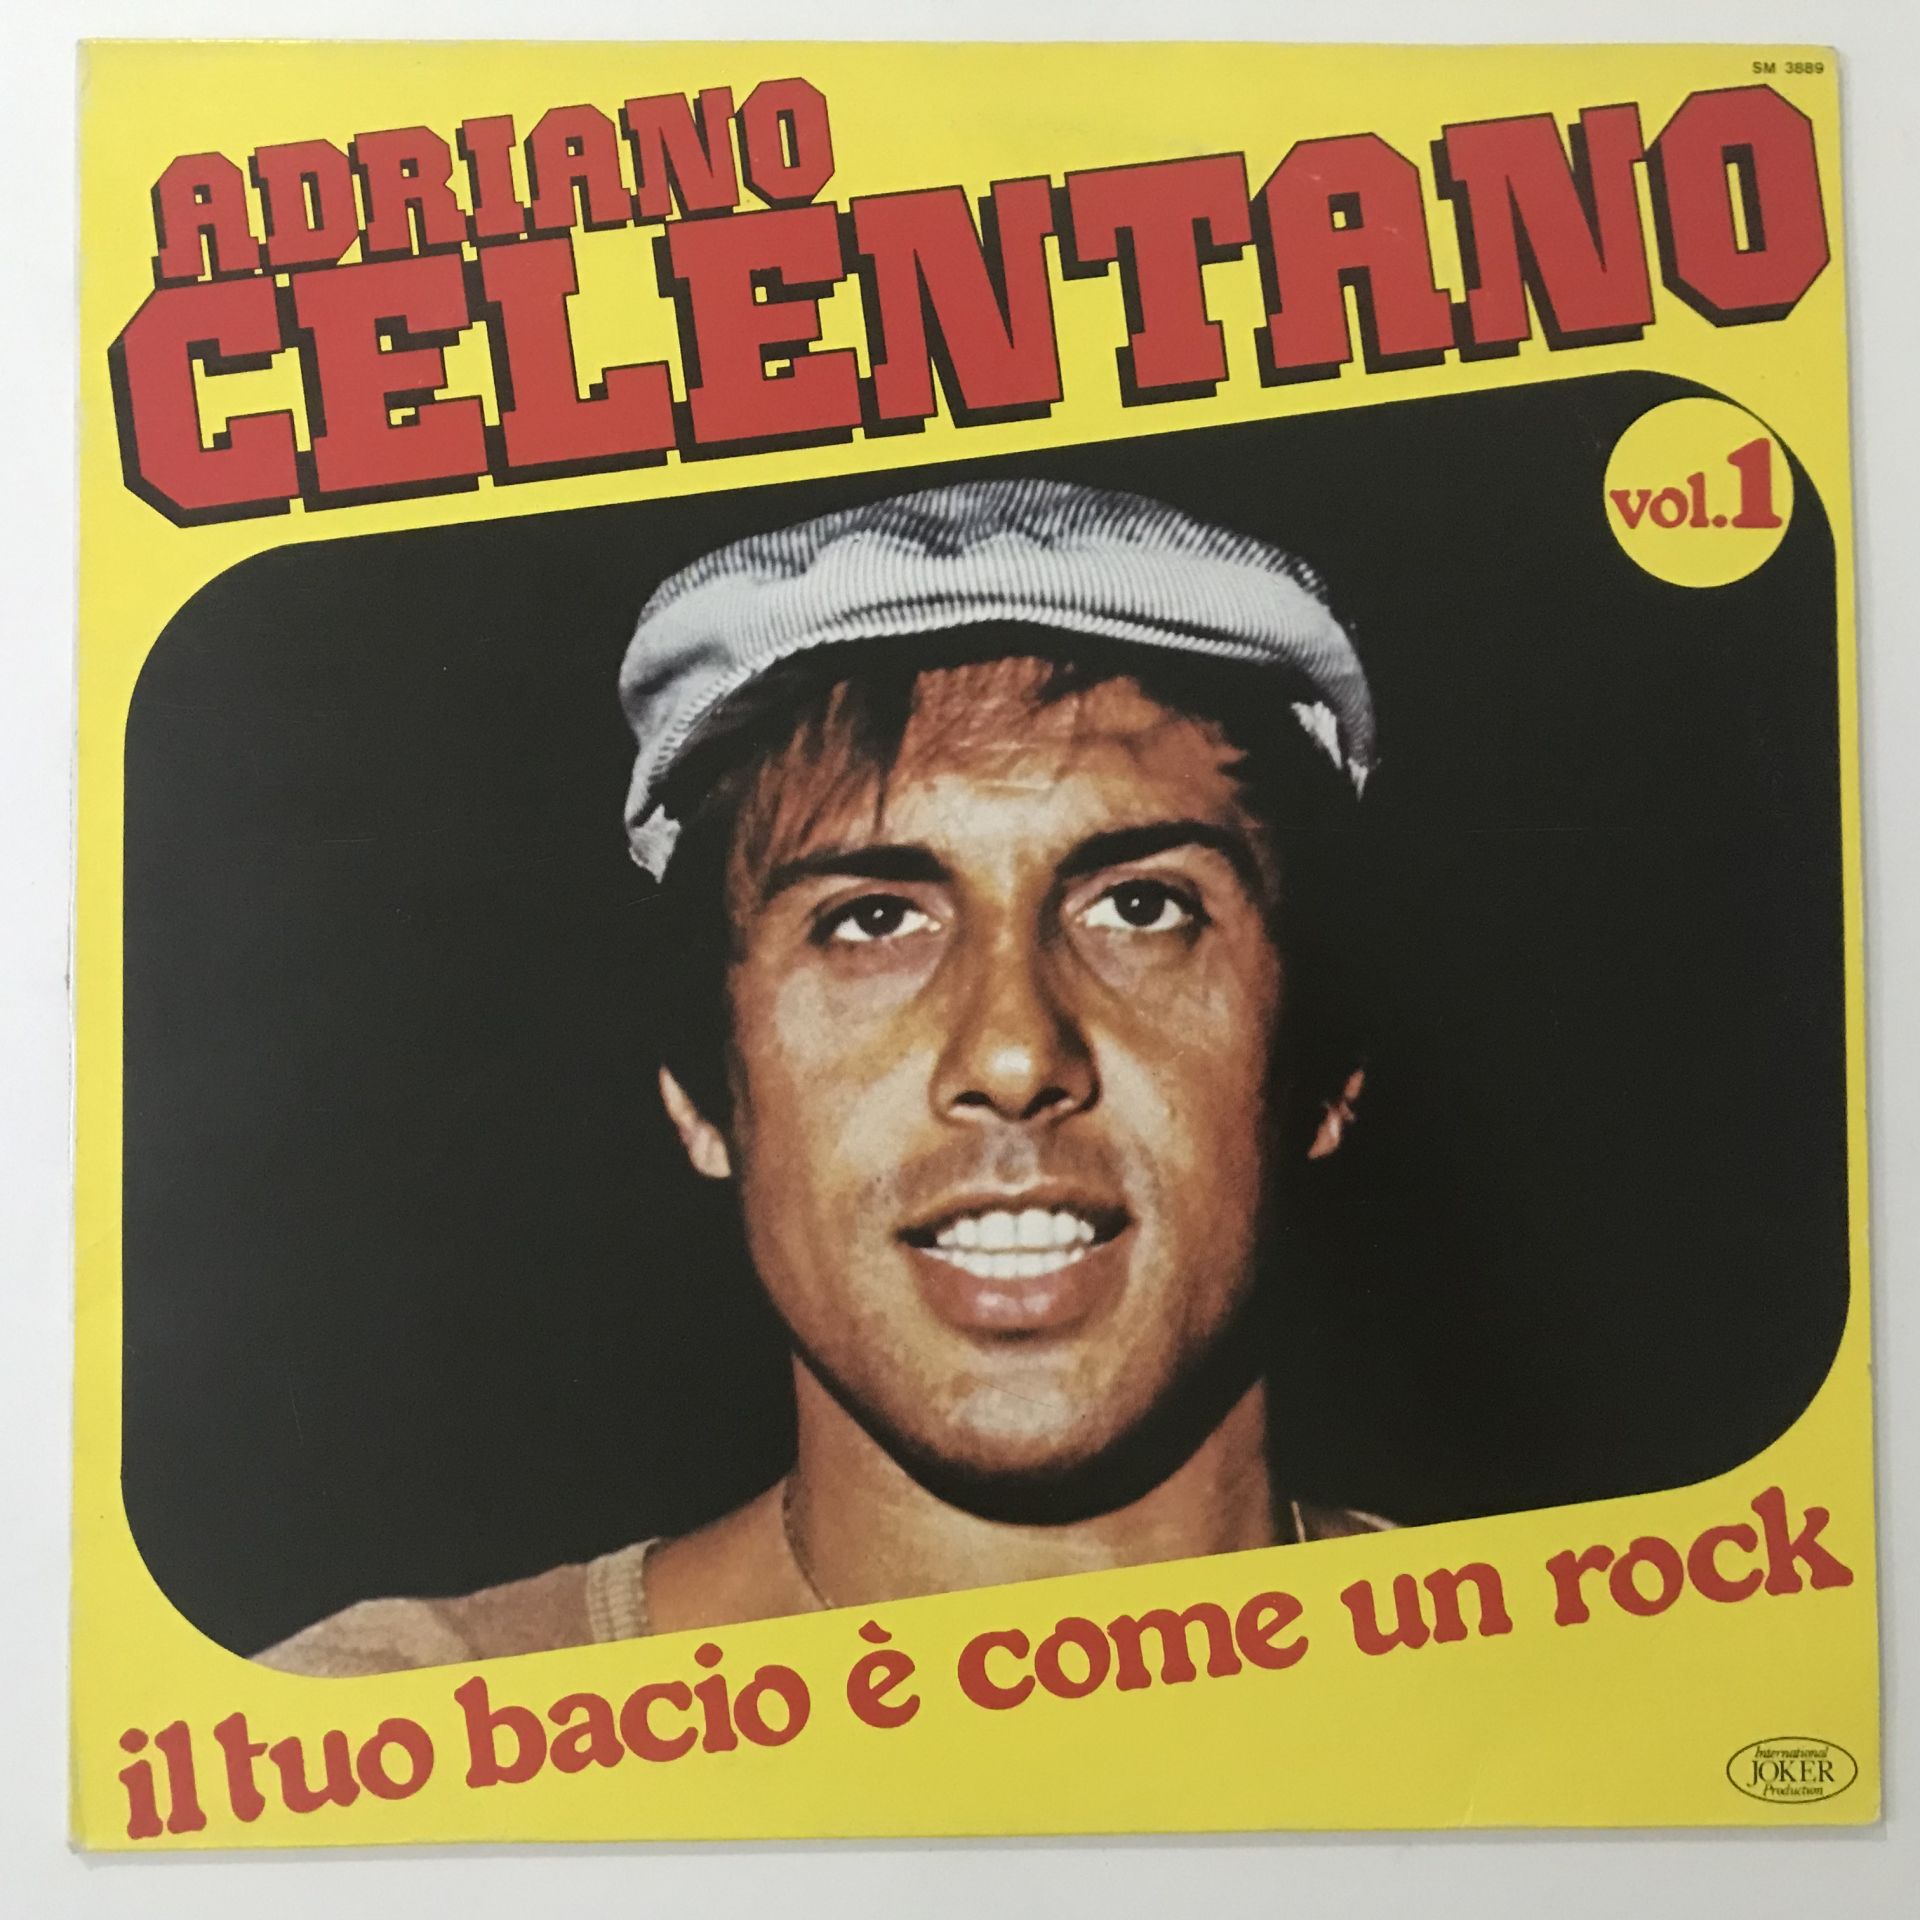 Adriano Celentano – Vol. 1 - Il Tuo Bacio È Come Un Rock